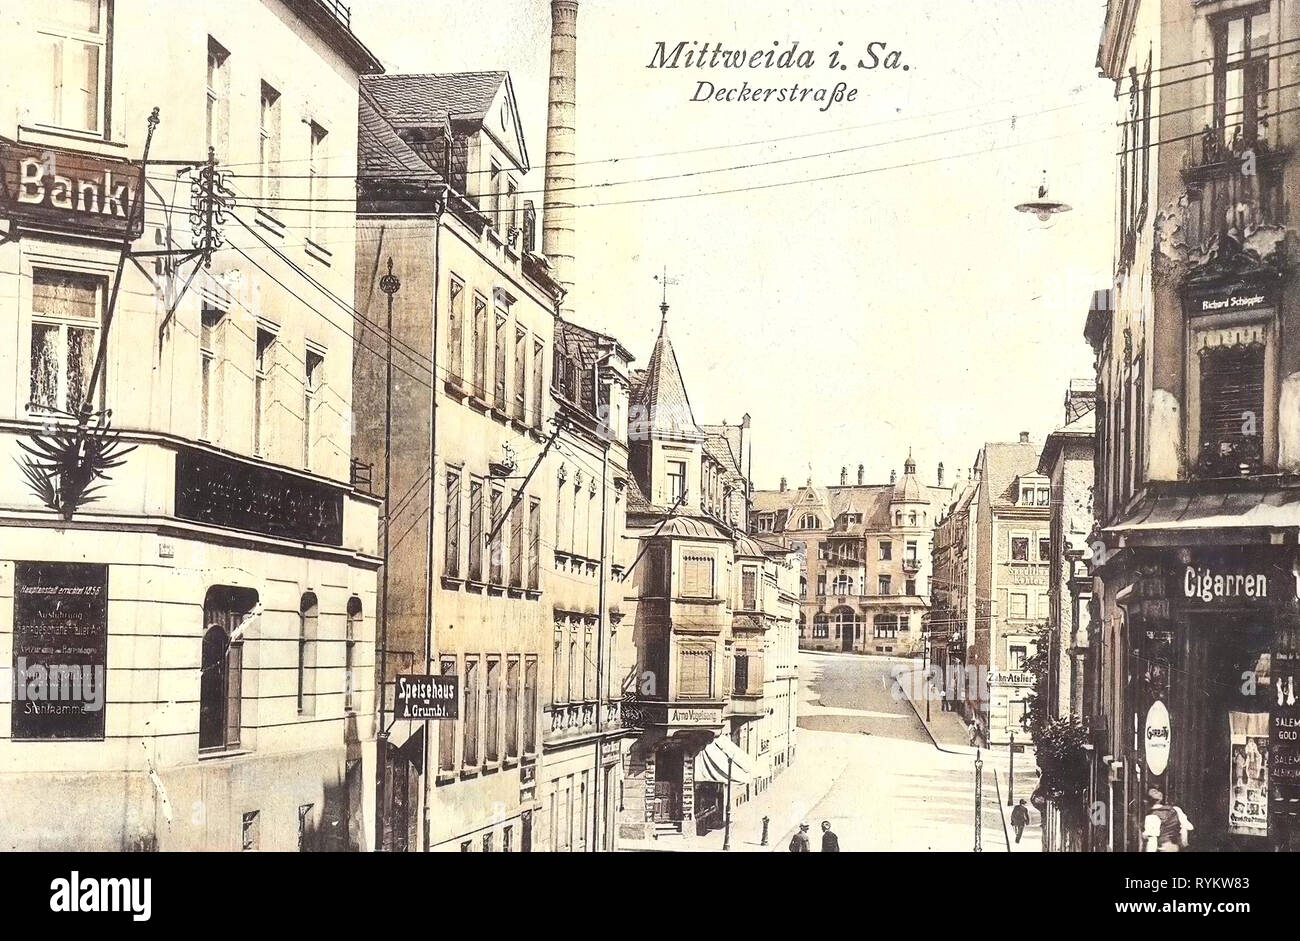 Buildings in Mittweida, Banks in Germany, Tobacco shops in Germany, 1921, Landkreis Mittelsachsen, Mittweida, Deckerstraße Stock Photo